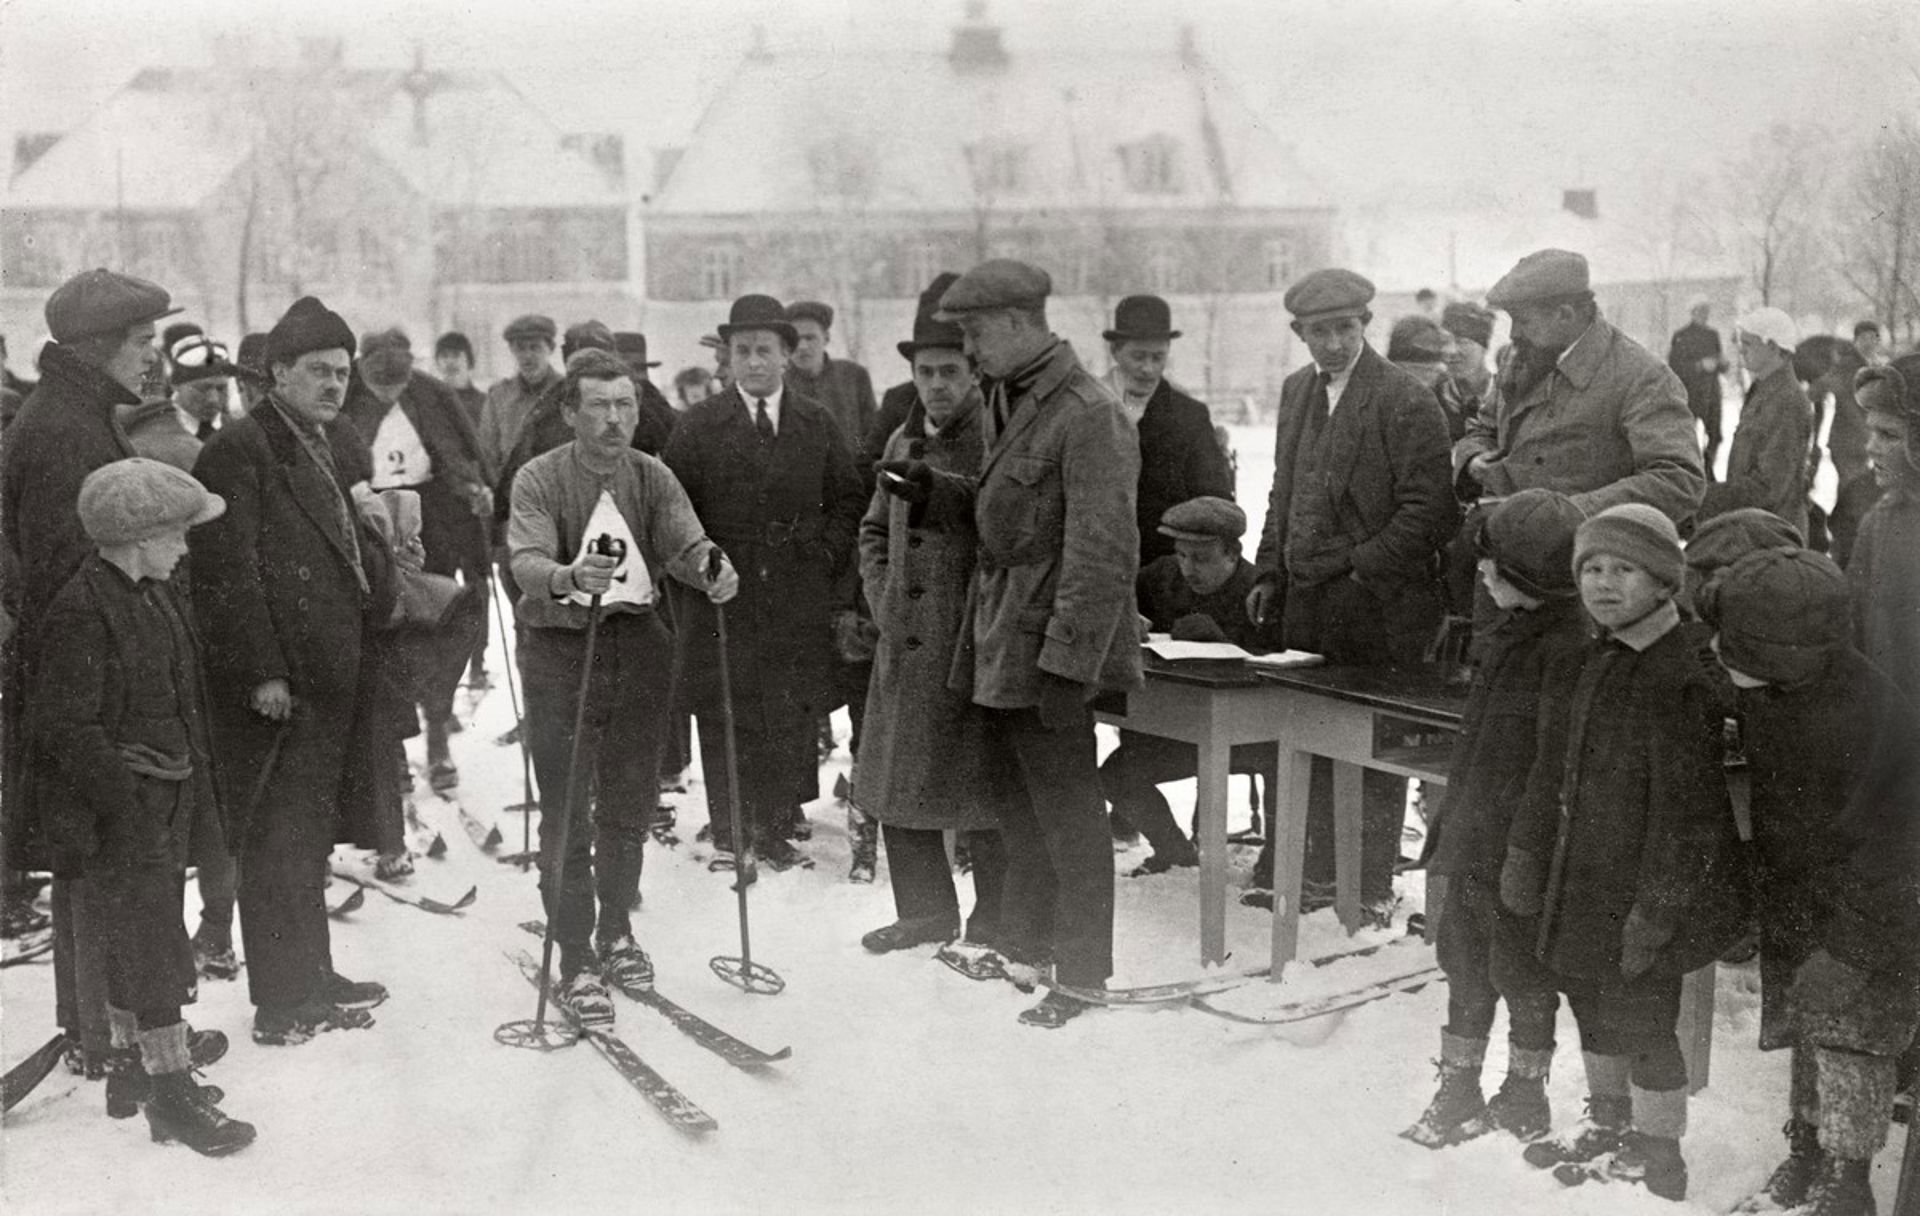 Mann med ski på beina og startnummer på brystet er omringet av mange mennesker i vinterklær.